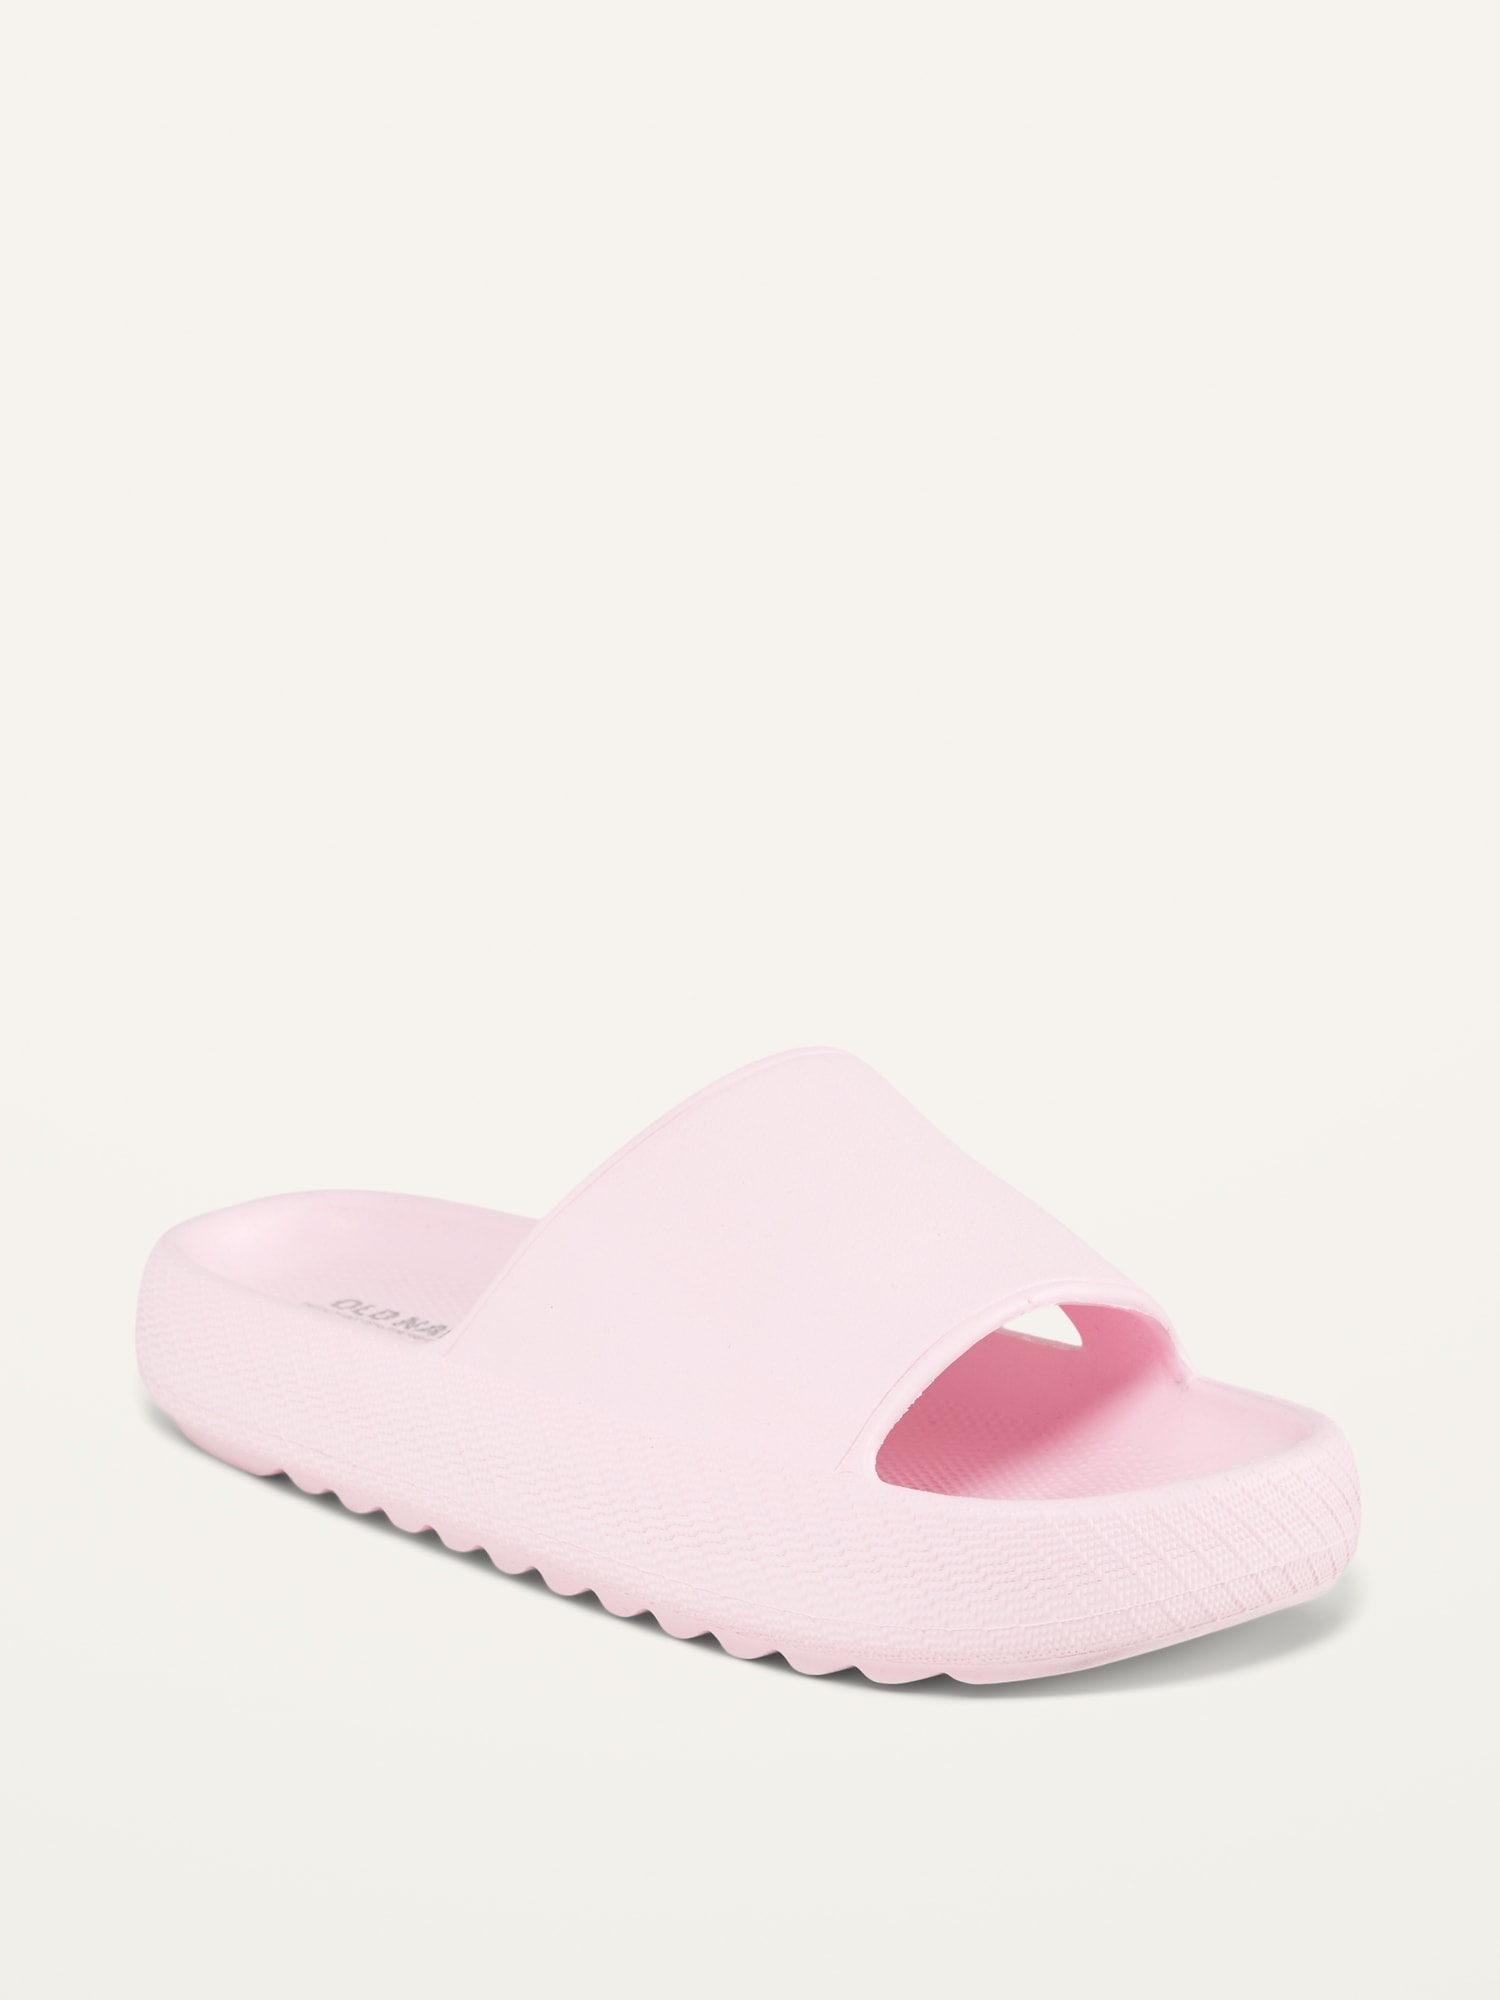 Gender-Neutral Slide Sandals for Kids (Partially Plant-Based) | Old Navy